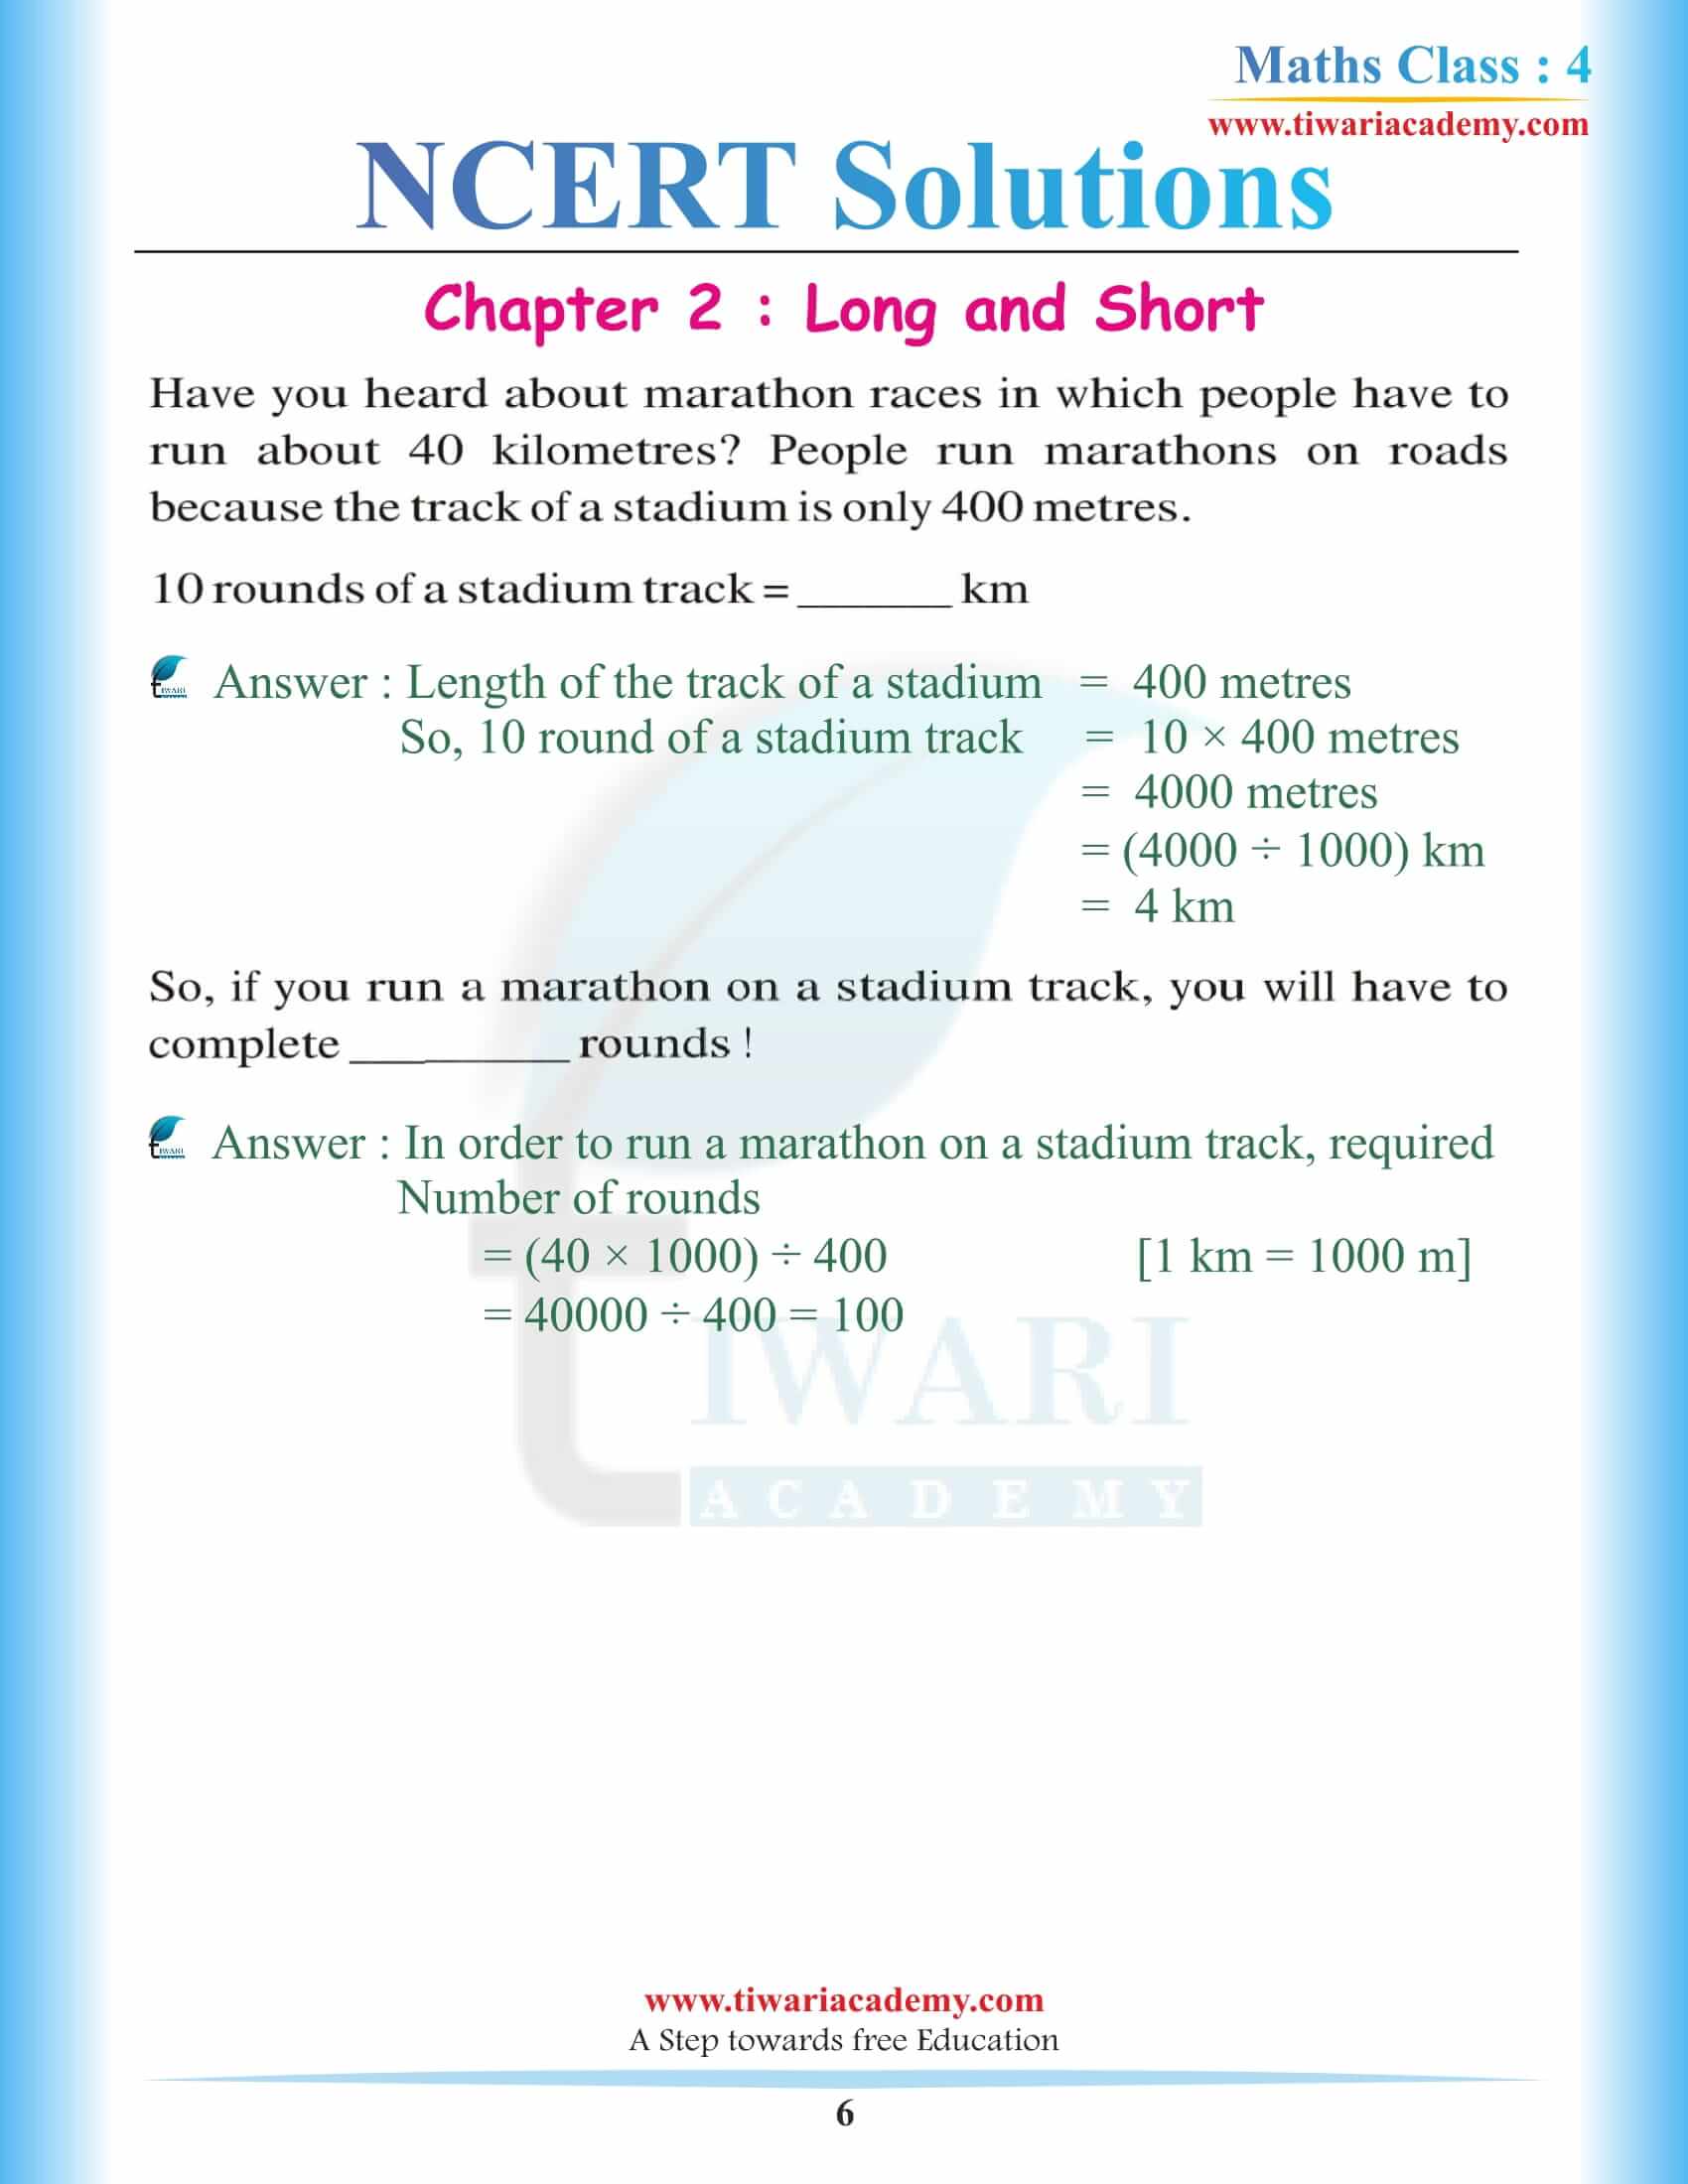 Class 4 Maths NCERT Chapter 2 Solutions